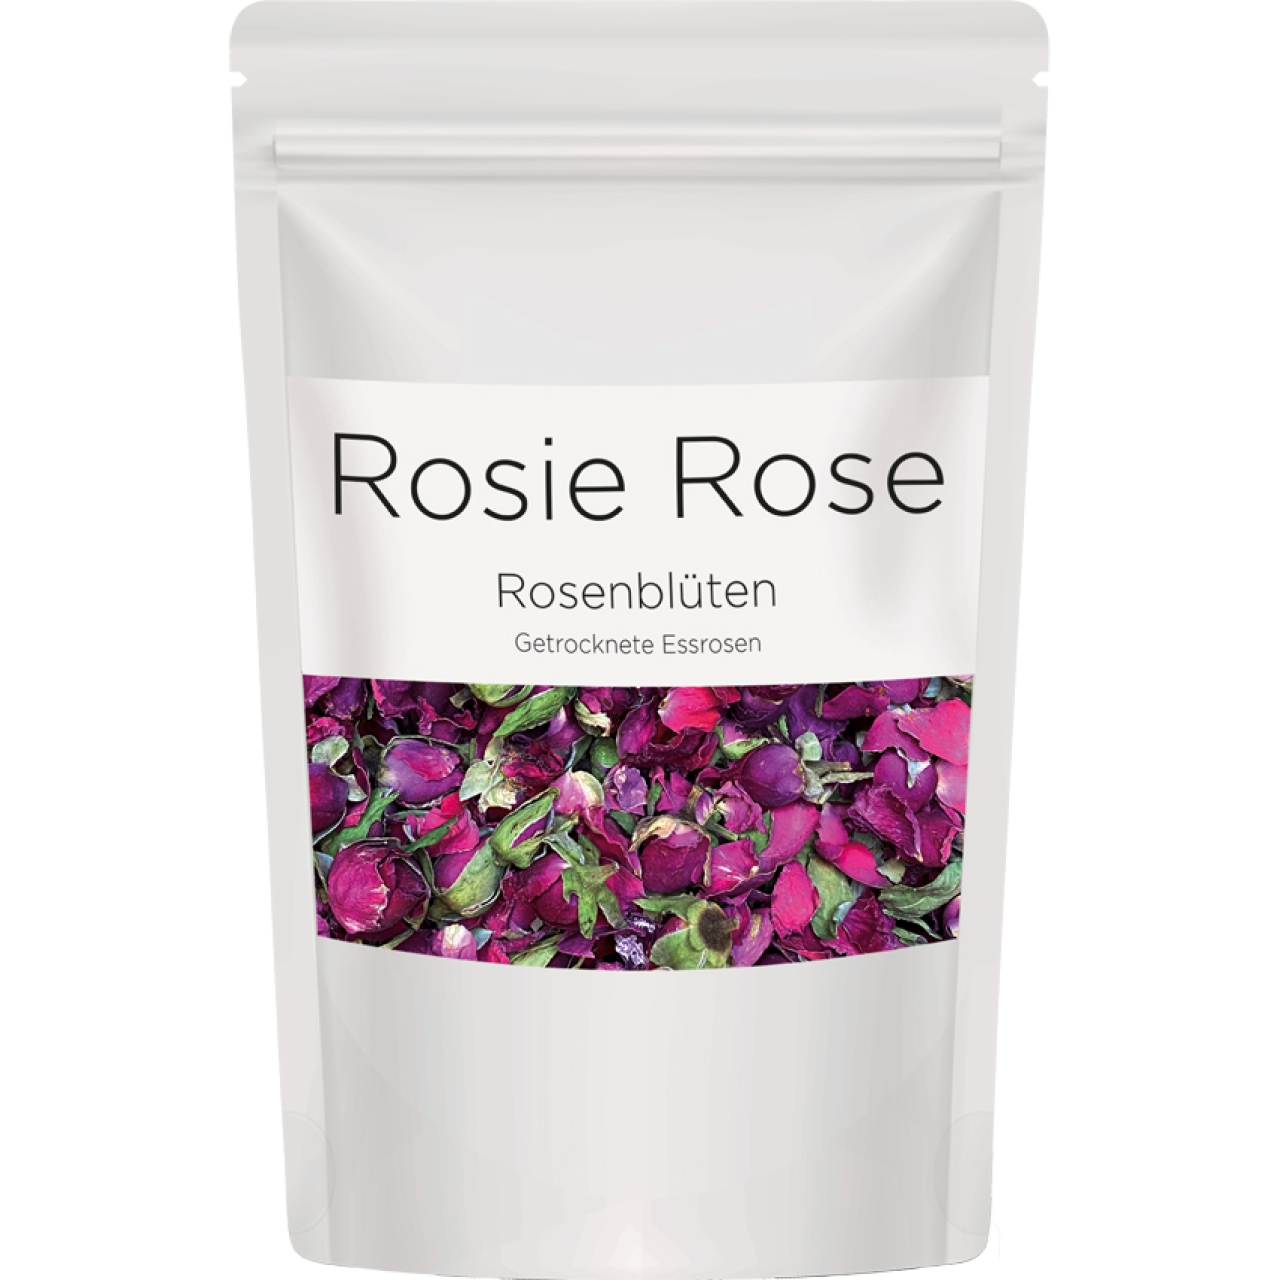 Rosenblüten "Pure Pink Gastro", 40 g, Rosa, Rosie Rose